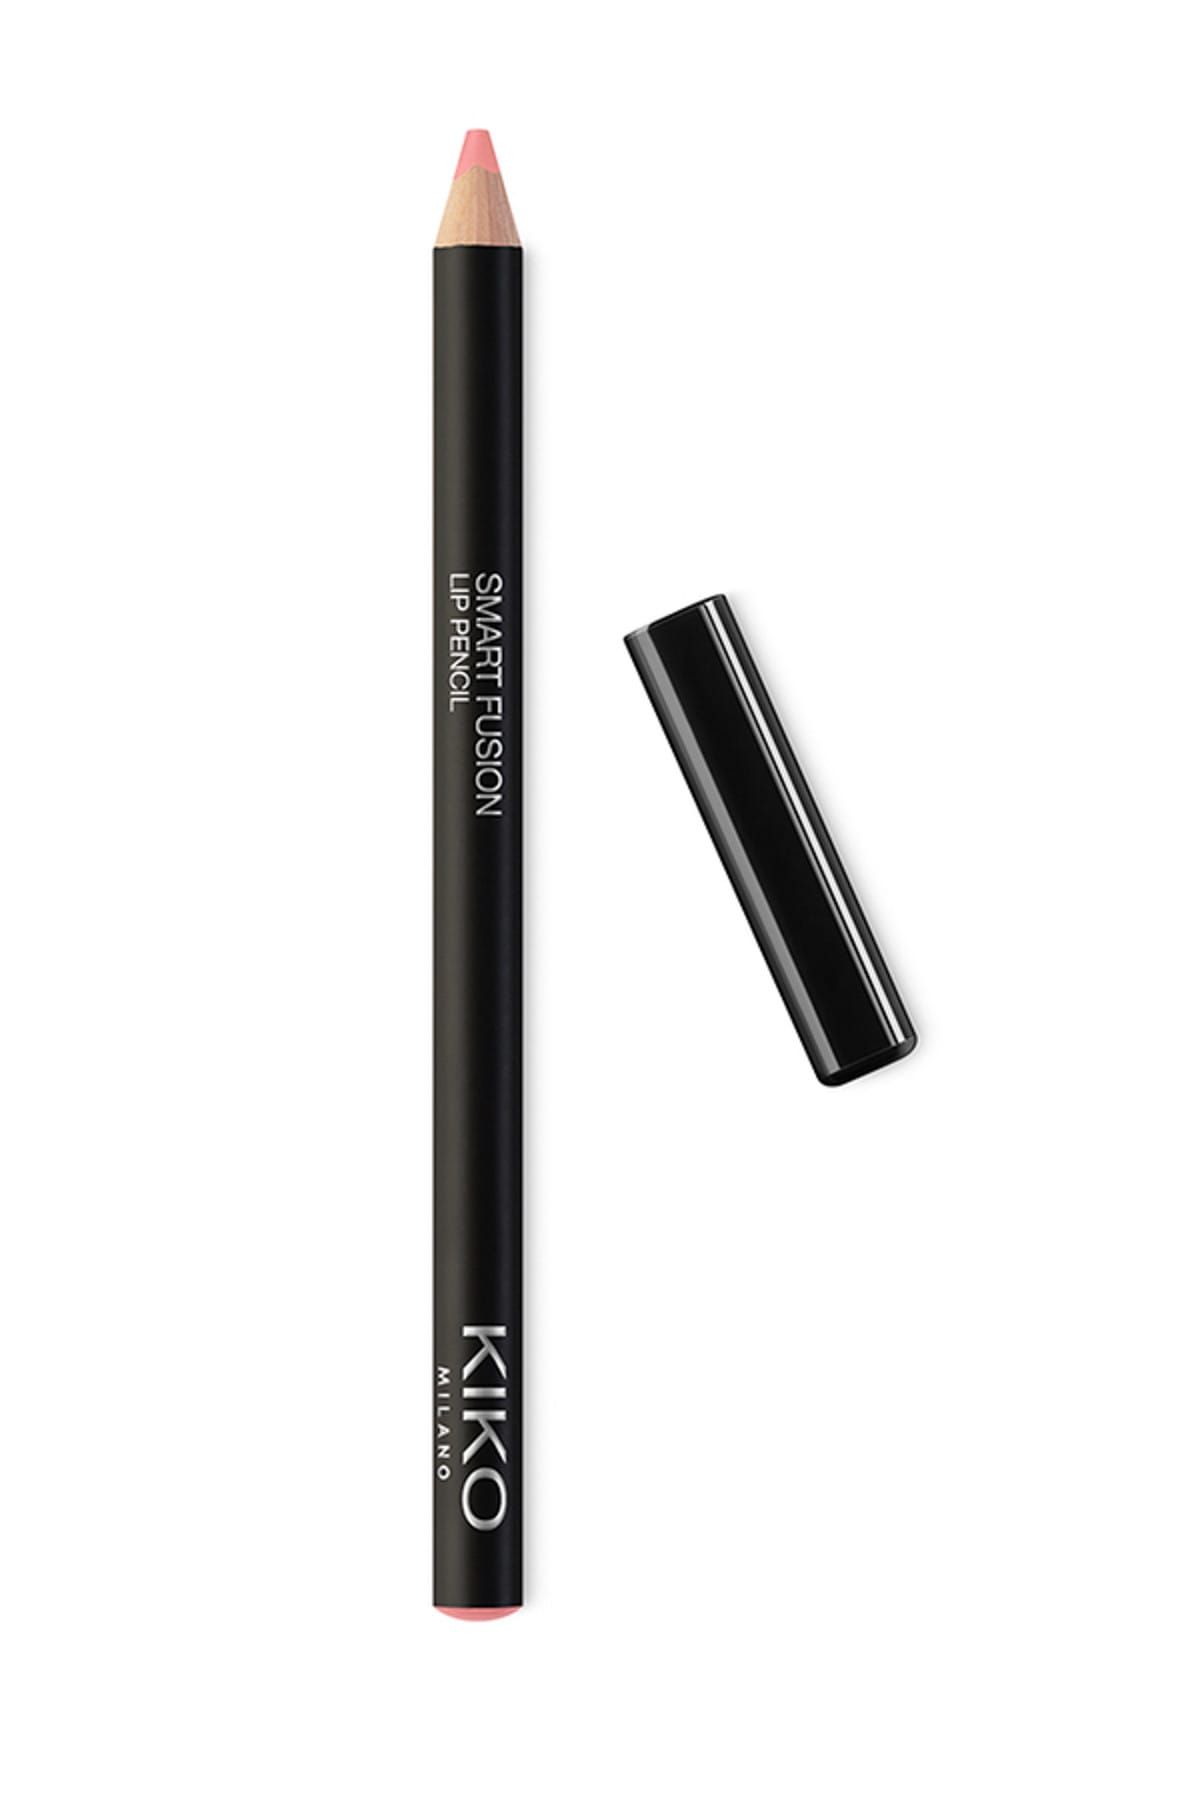 KIKO مداد لب Smart Fusion بافت نرم و روان شماره 503 رنگ رز نود